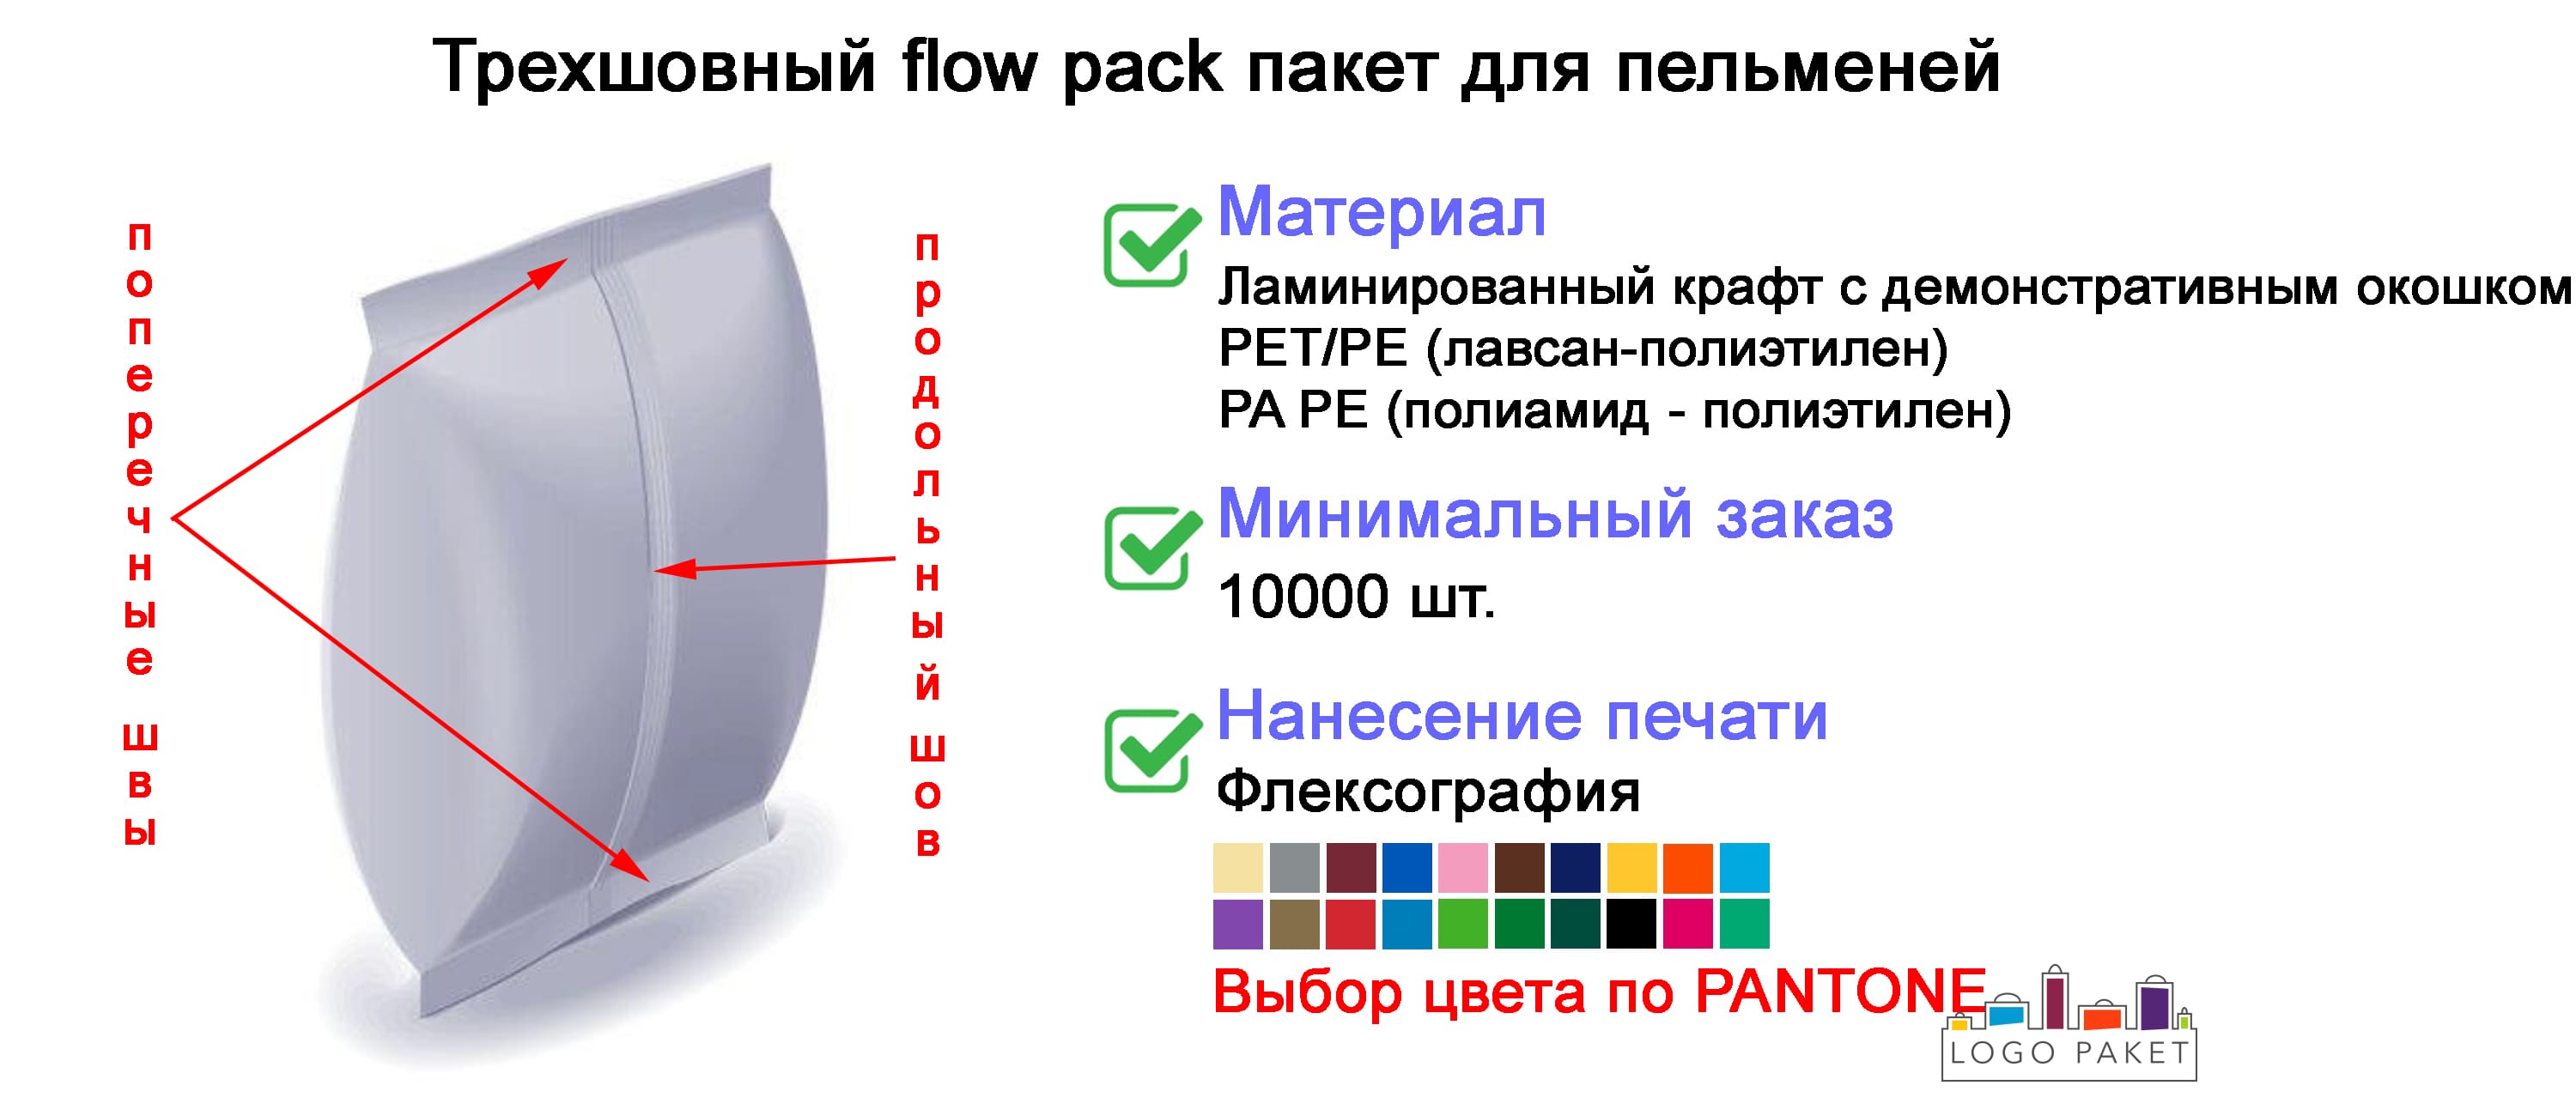 Трехшовный flow pack пакет для пельменей инфографика 